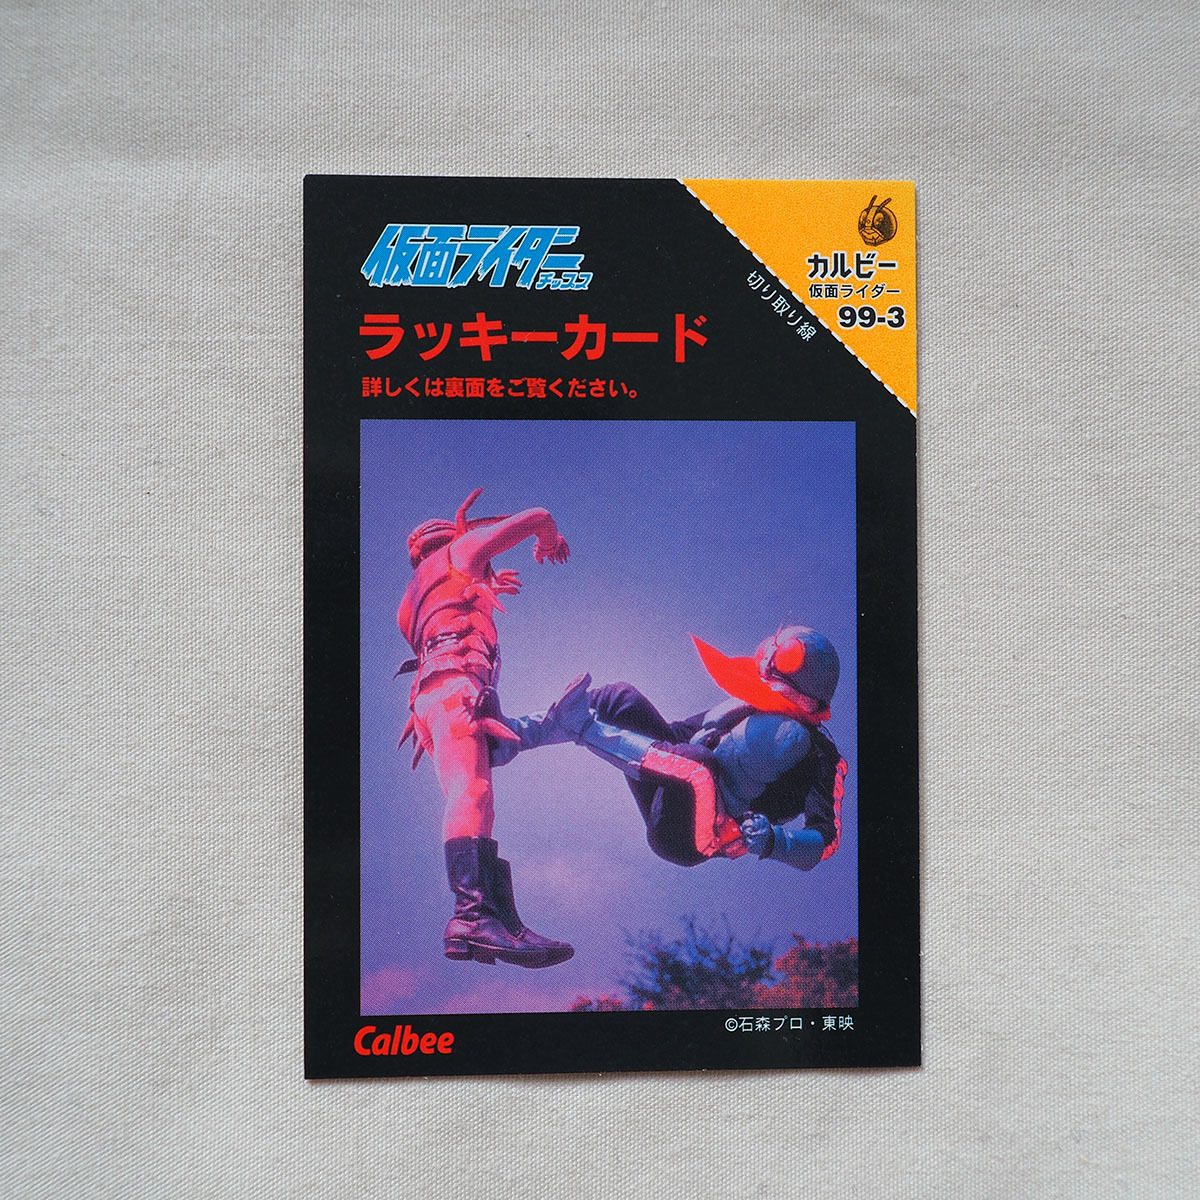 仮面ライダーチップス(1999年復刻版)カルビー セミコンプ228種類セット 